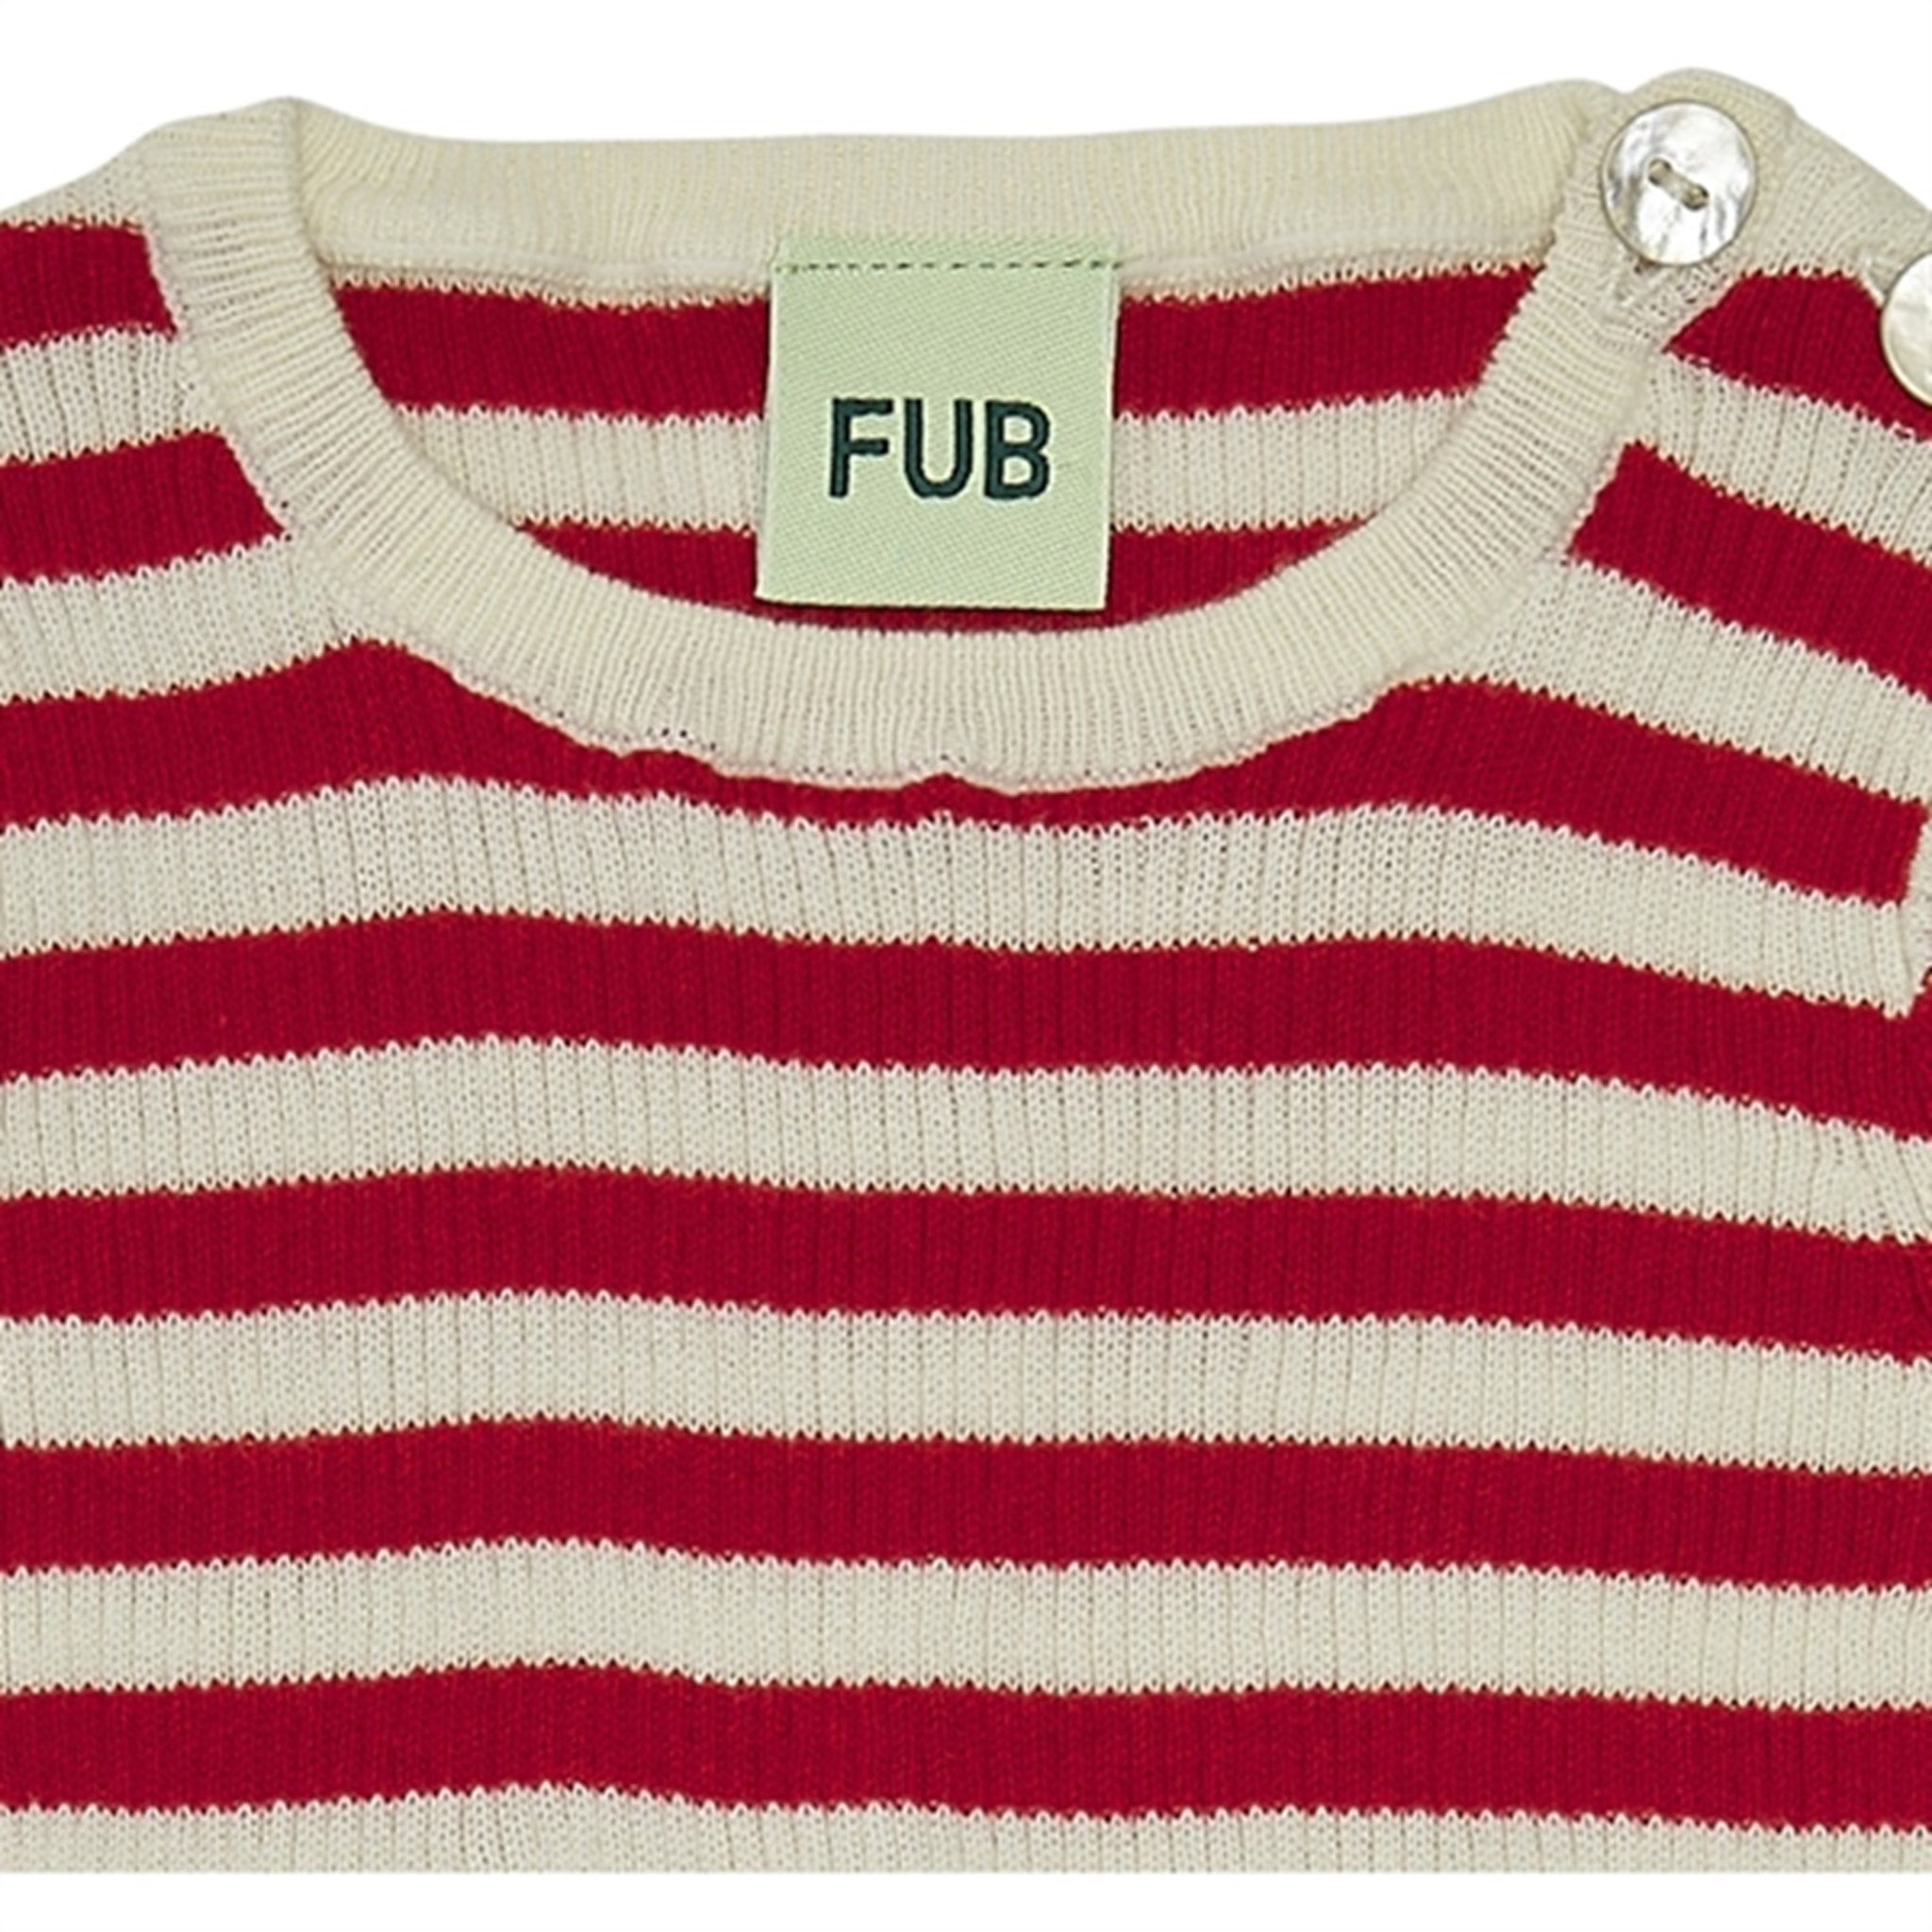 FUB Baby Rib Body Ecru/Bright Red 2